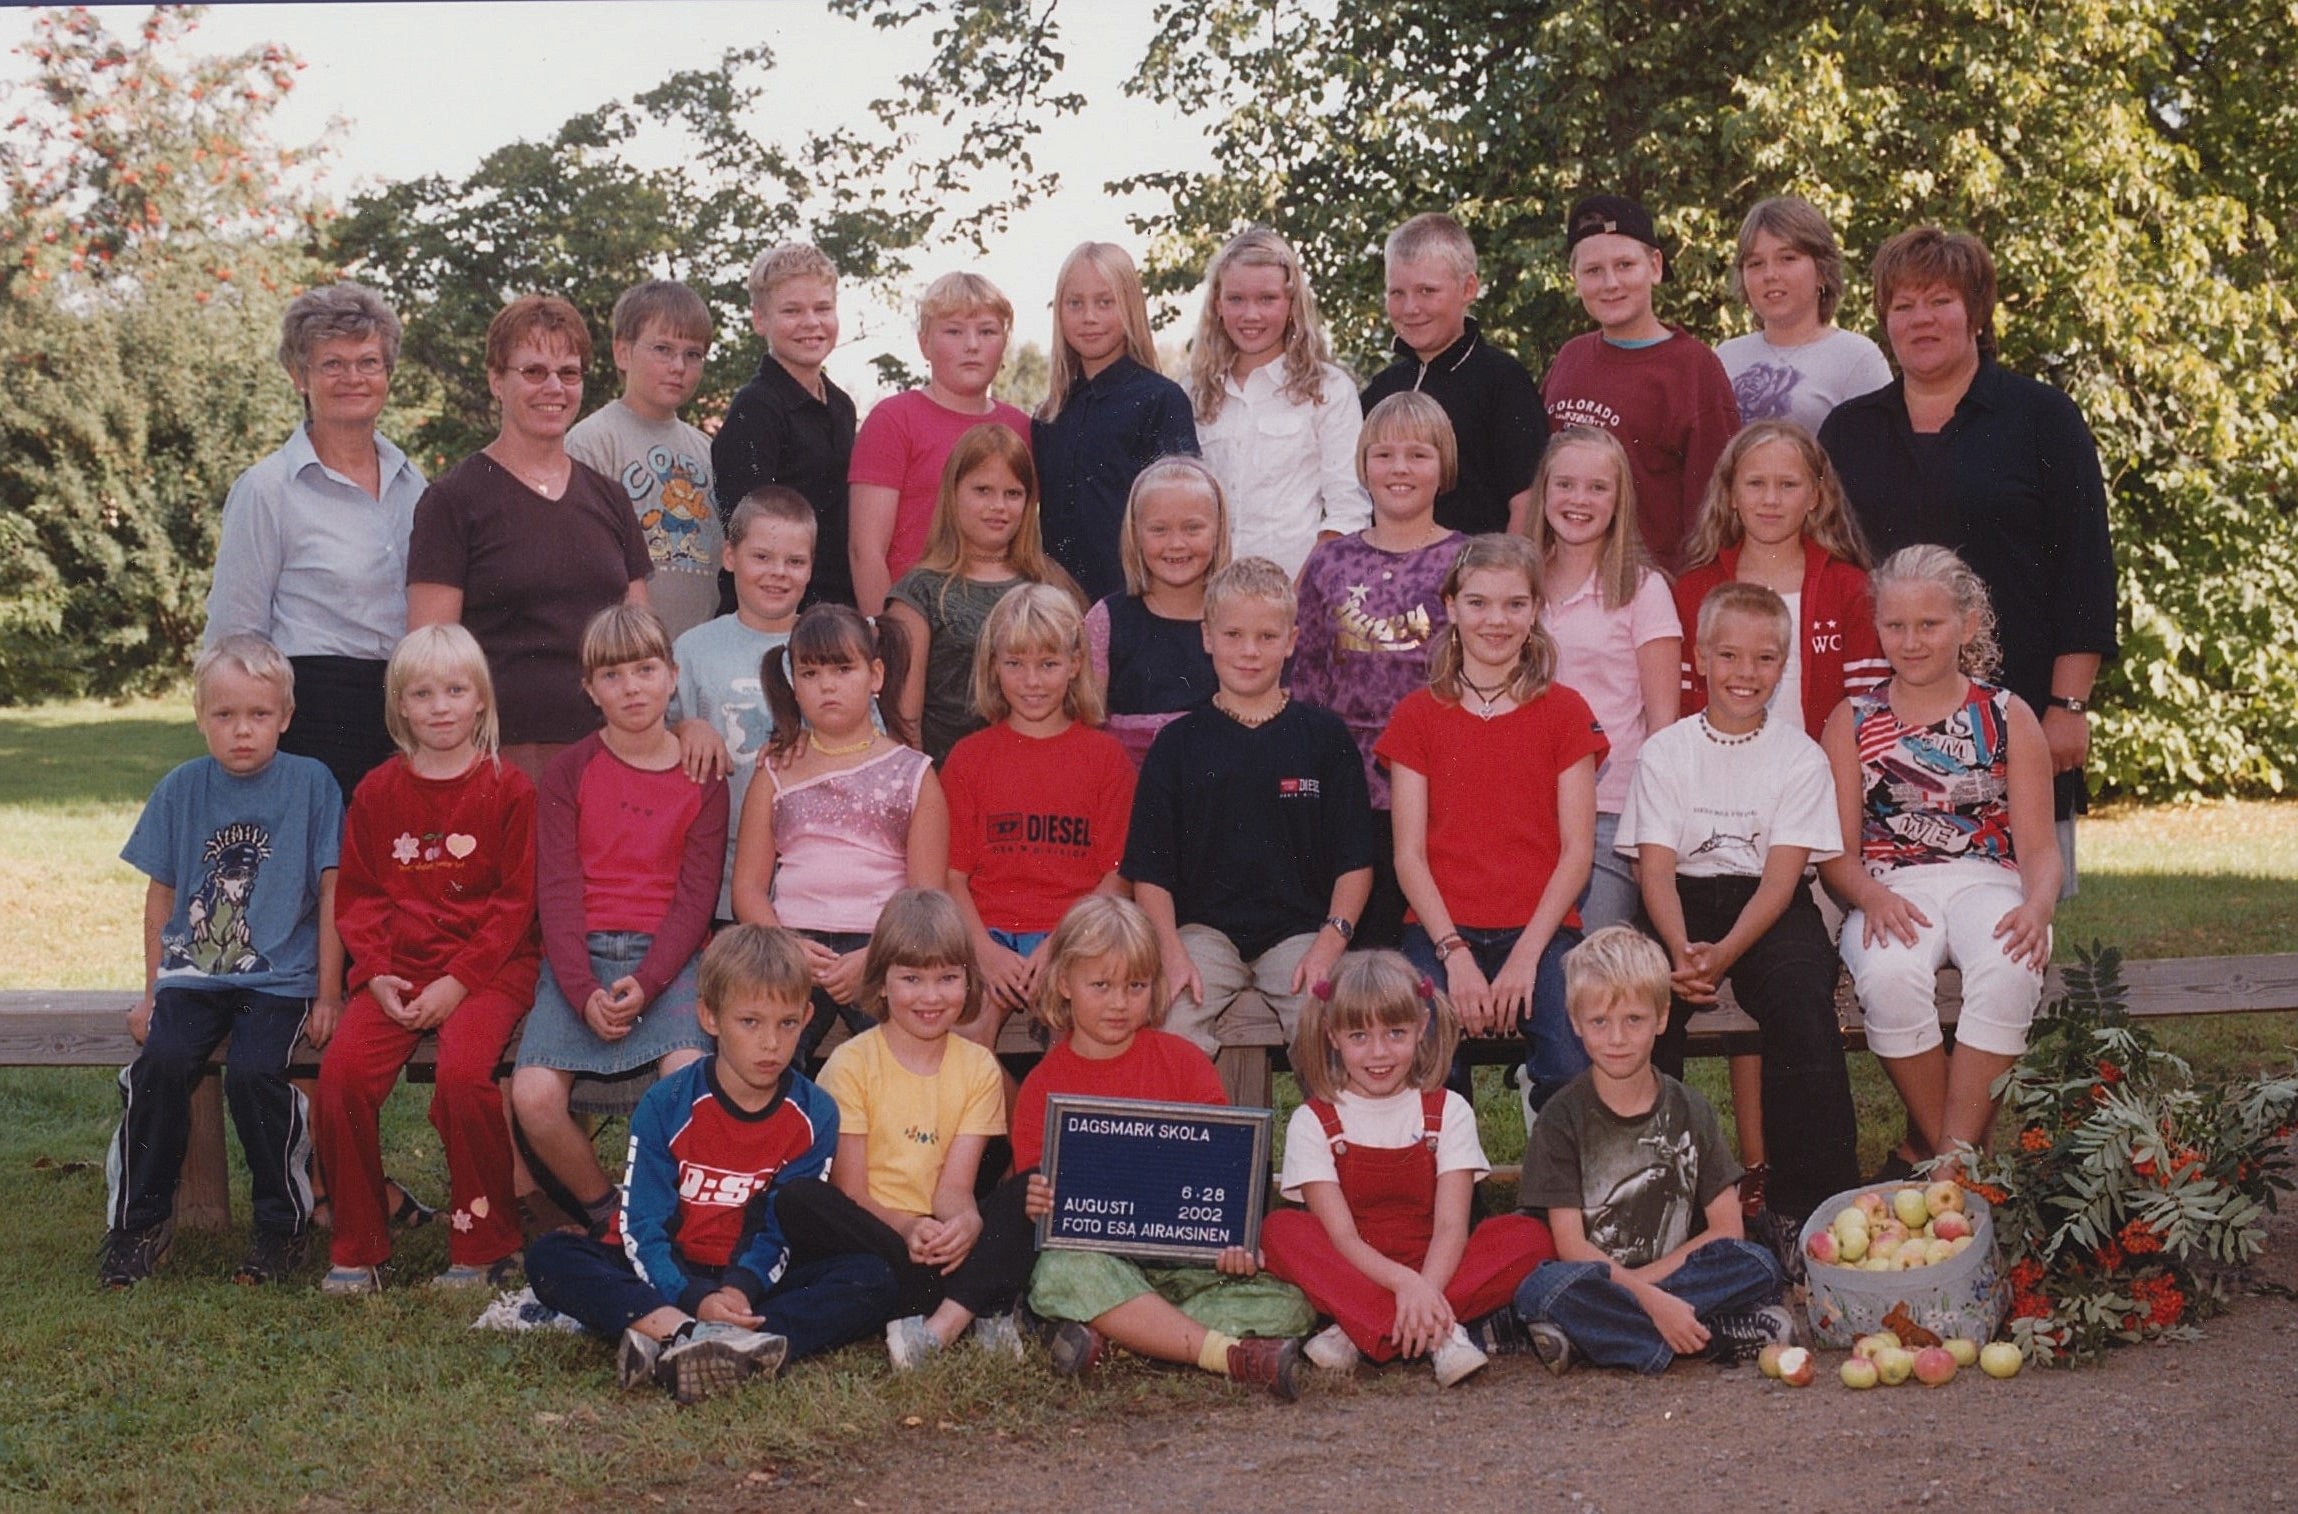 År 2002, Dagsmark skola.